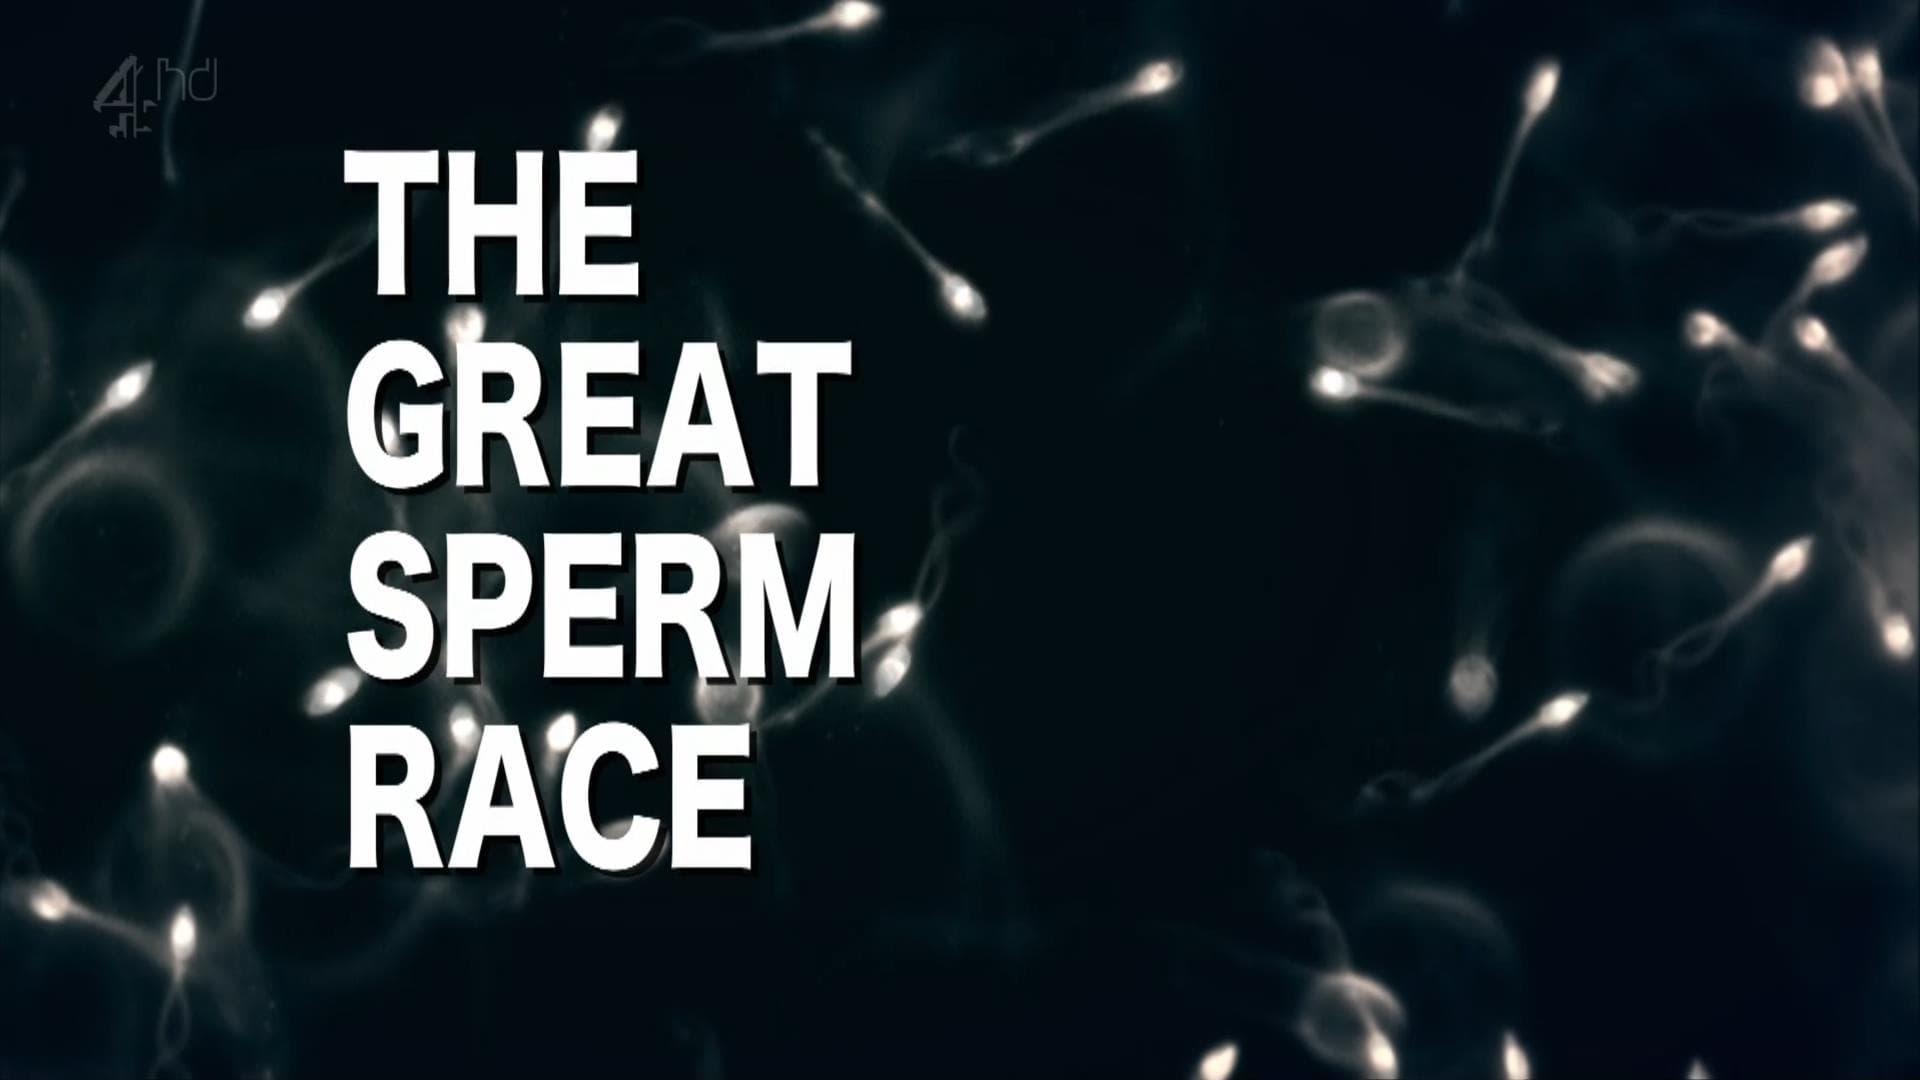 The Great Sperm Race backdrop